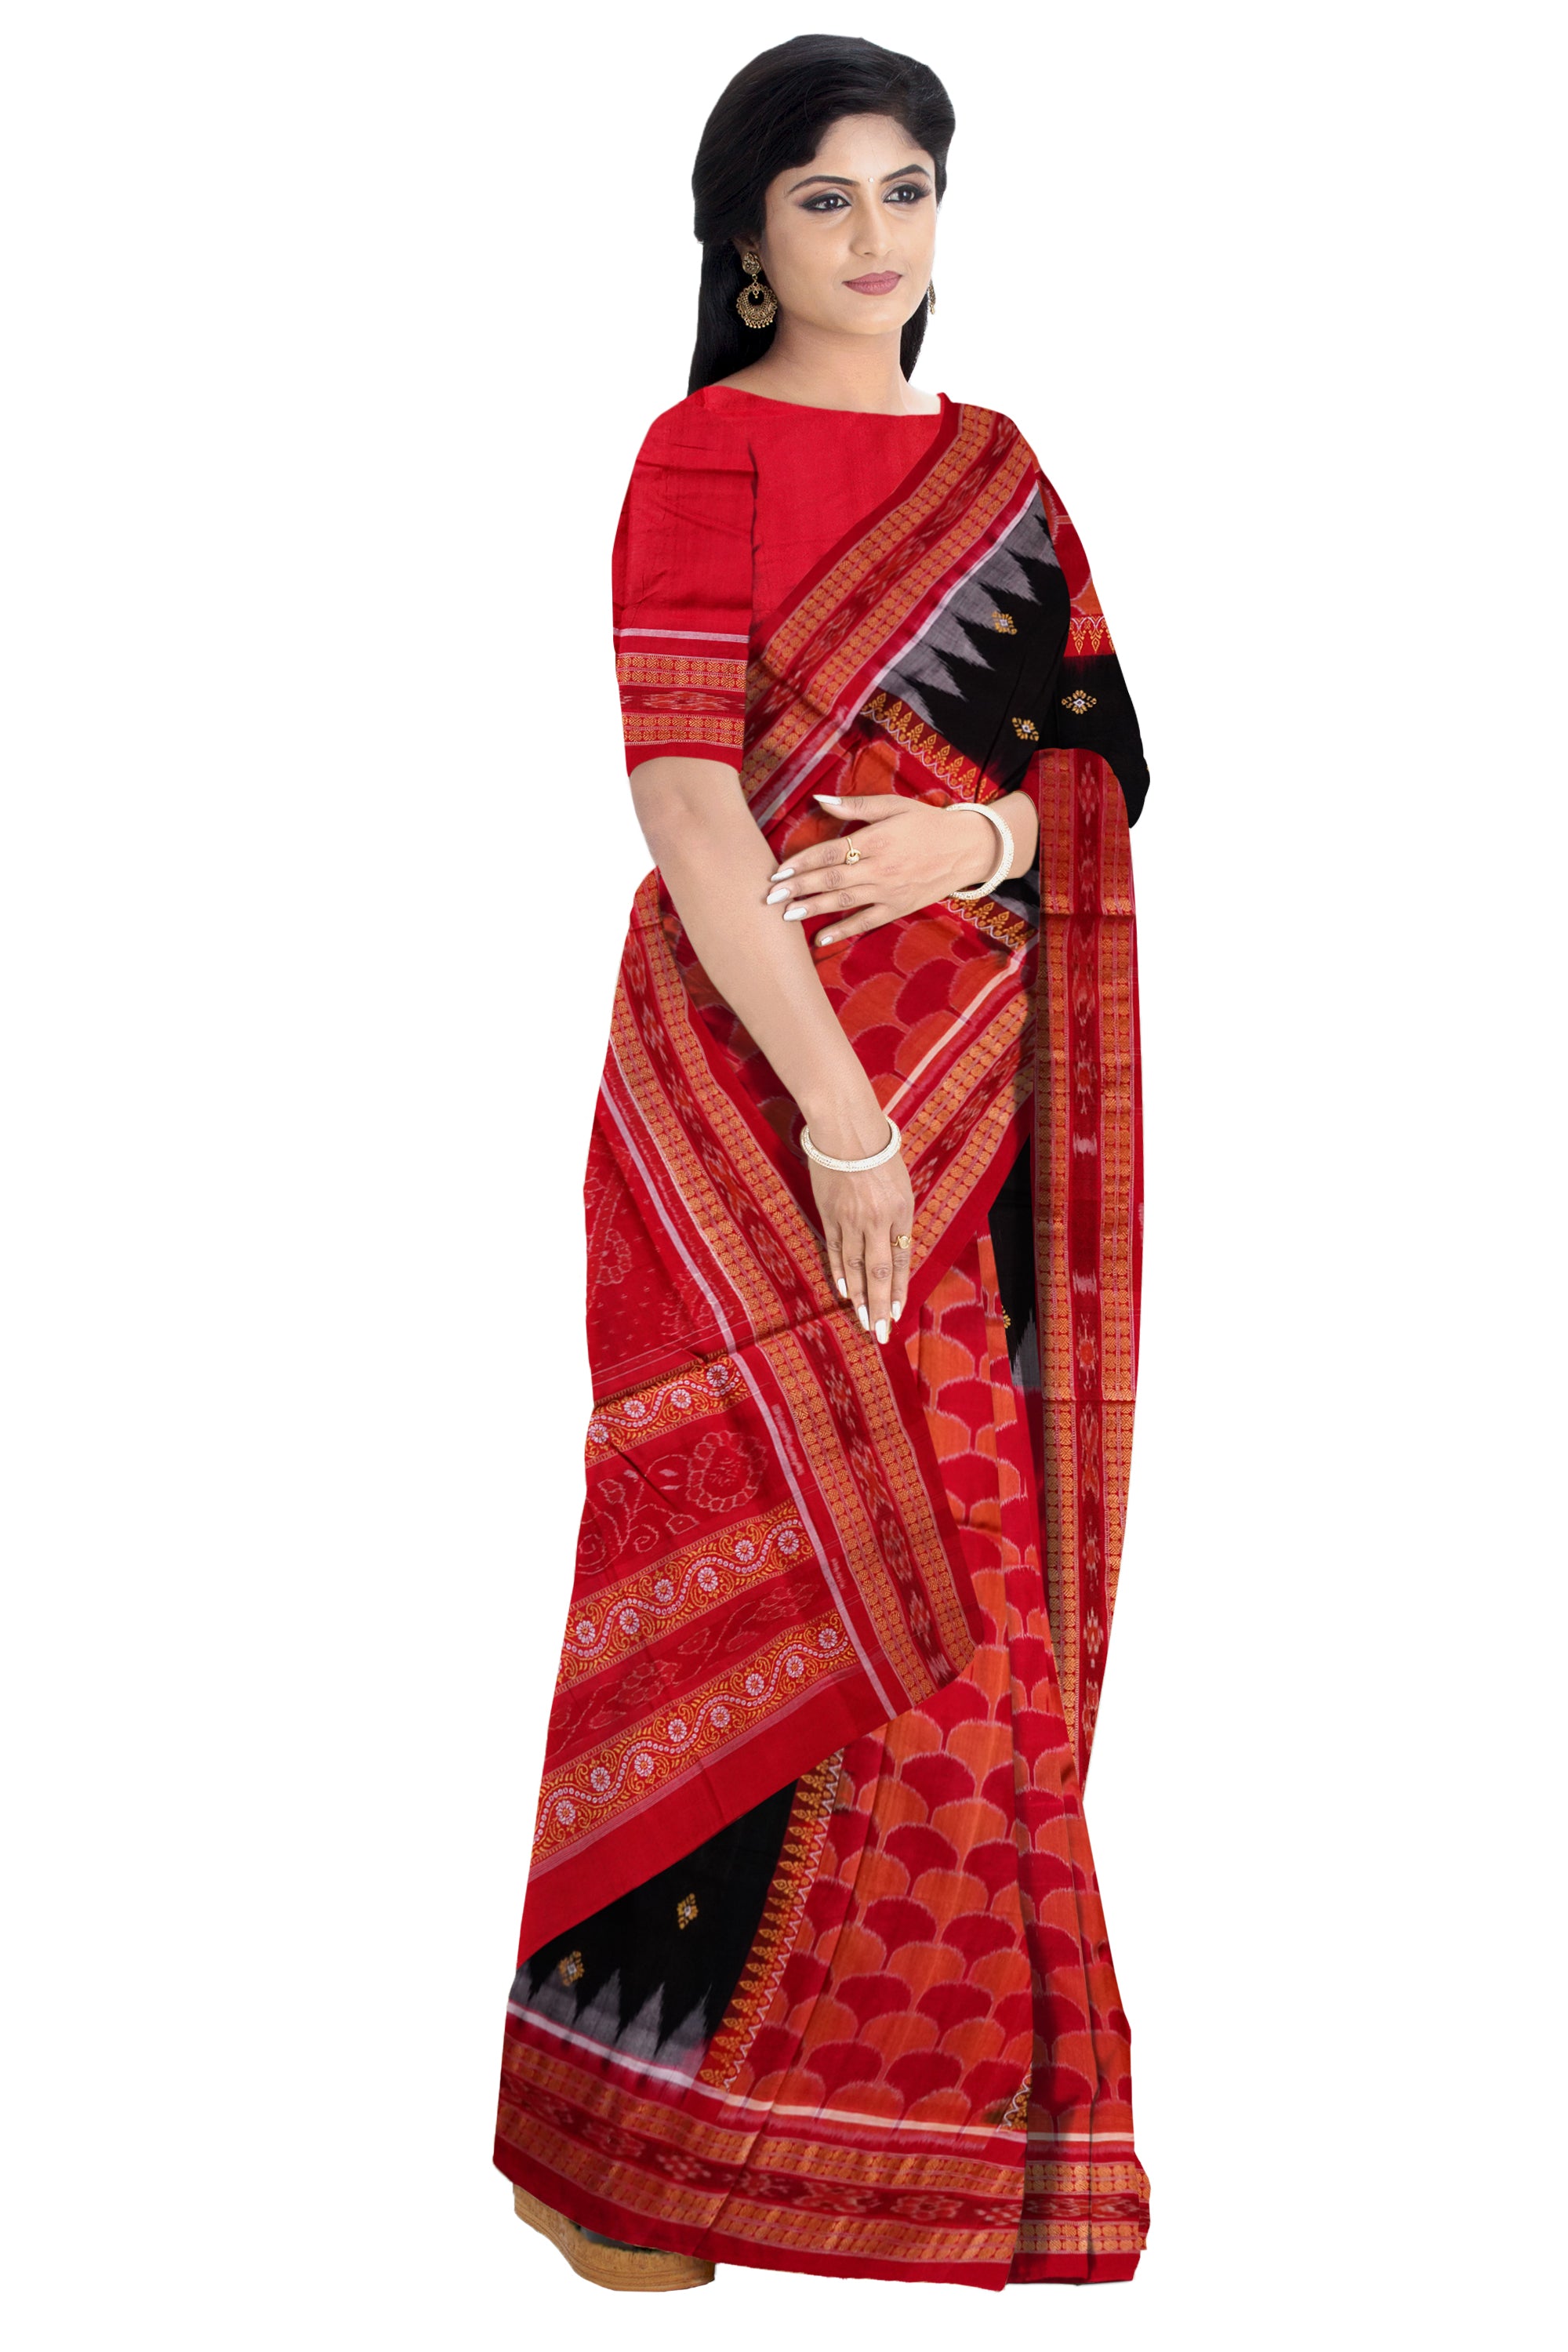 Sambalpuri cotton pere pere saree in Red and Black colour. - Koshali Arts & Crafts Enterprise